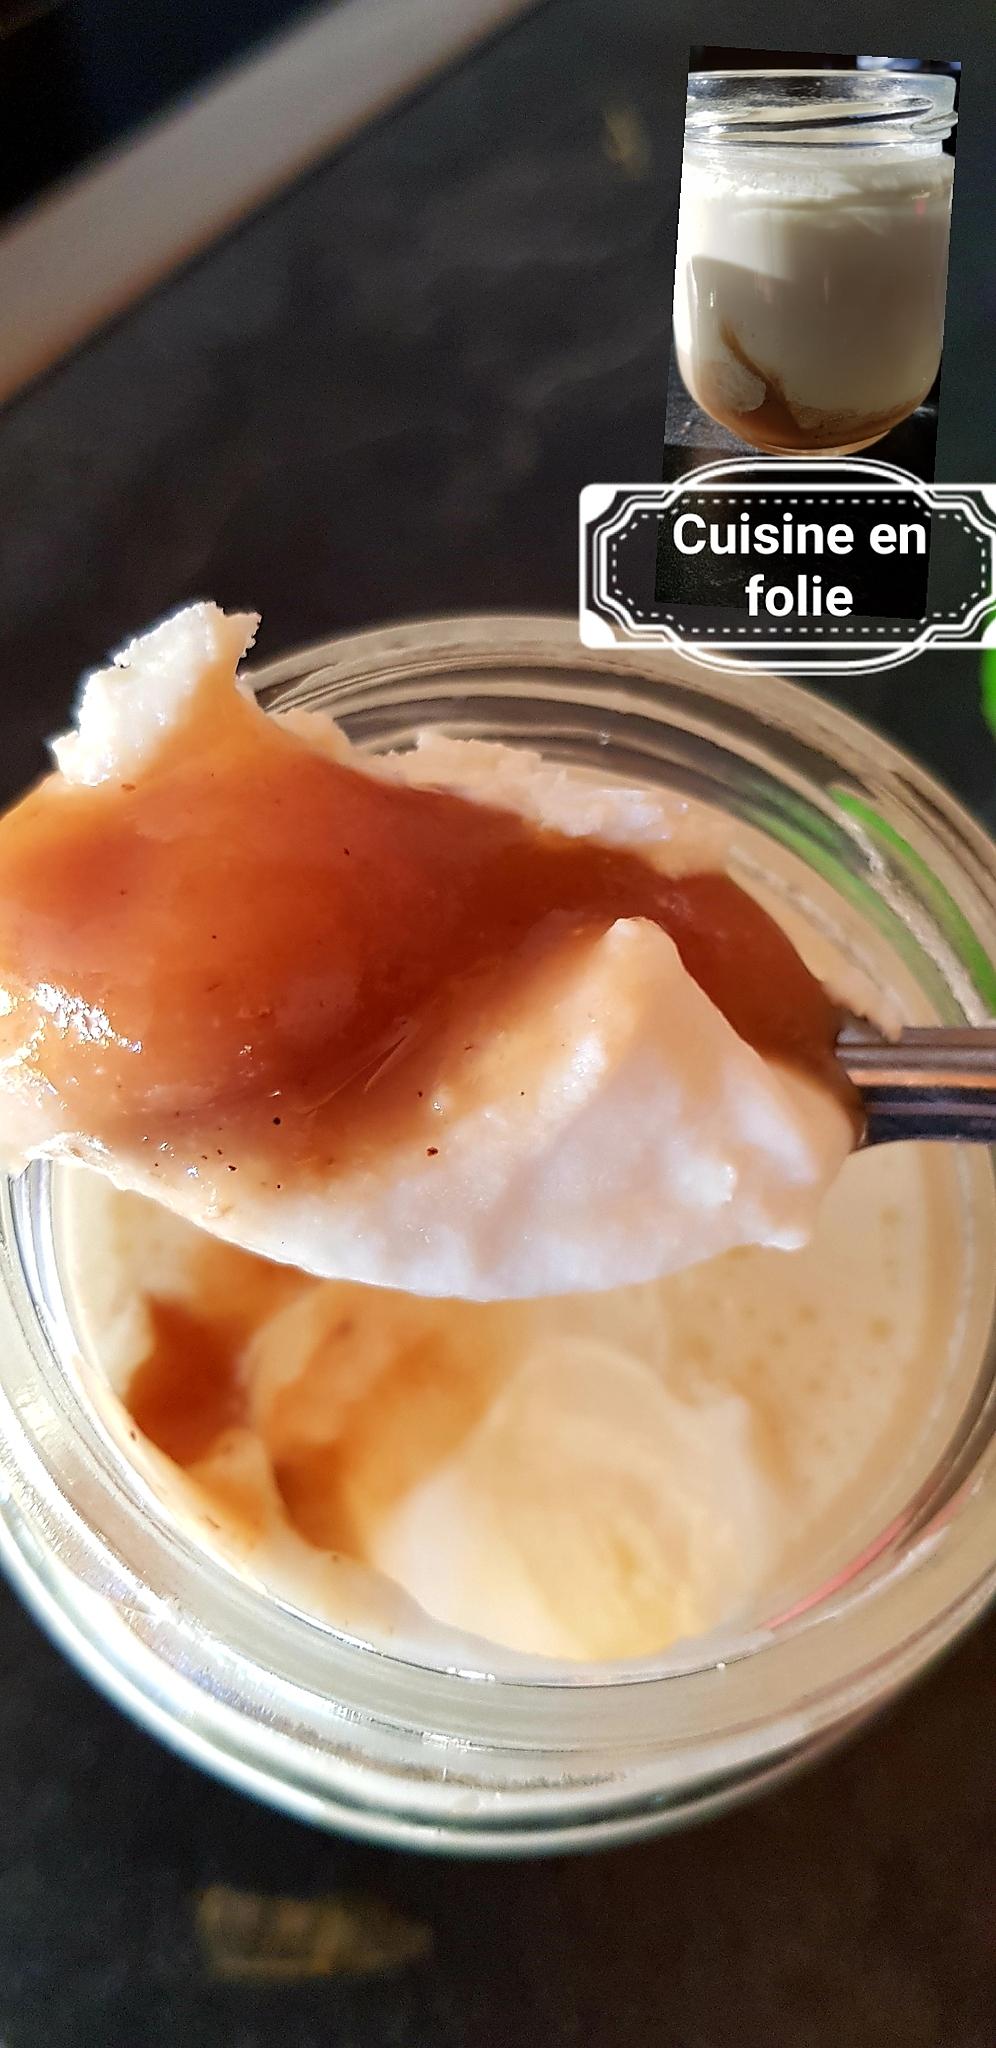 recette Yaourt maison à la crème de marron ( recette sans cuisson pour des yaourts fermes et onctueux )